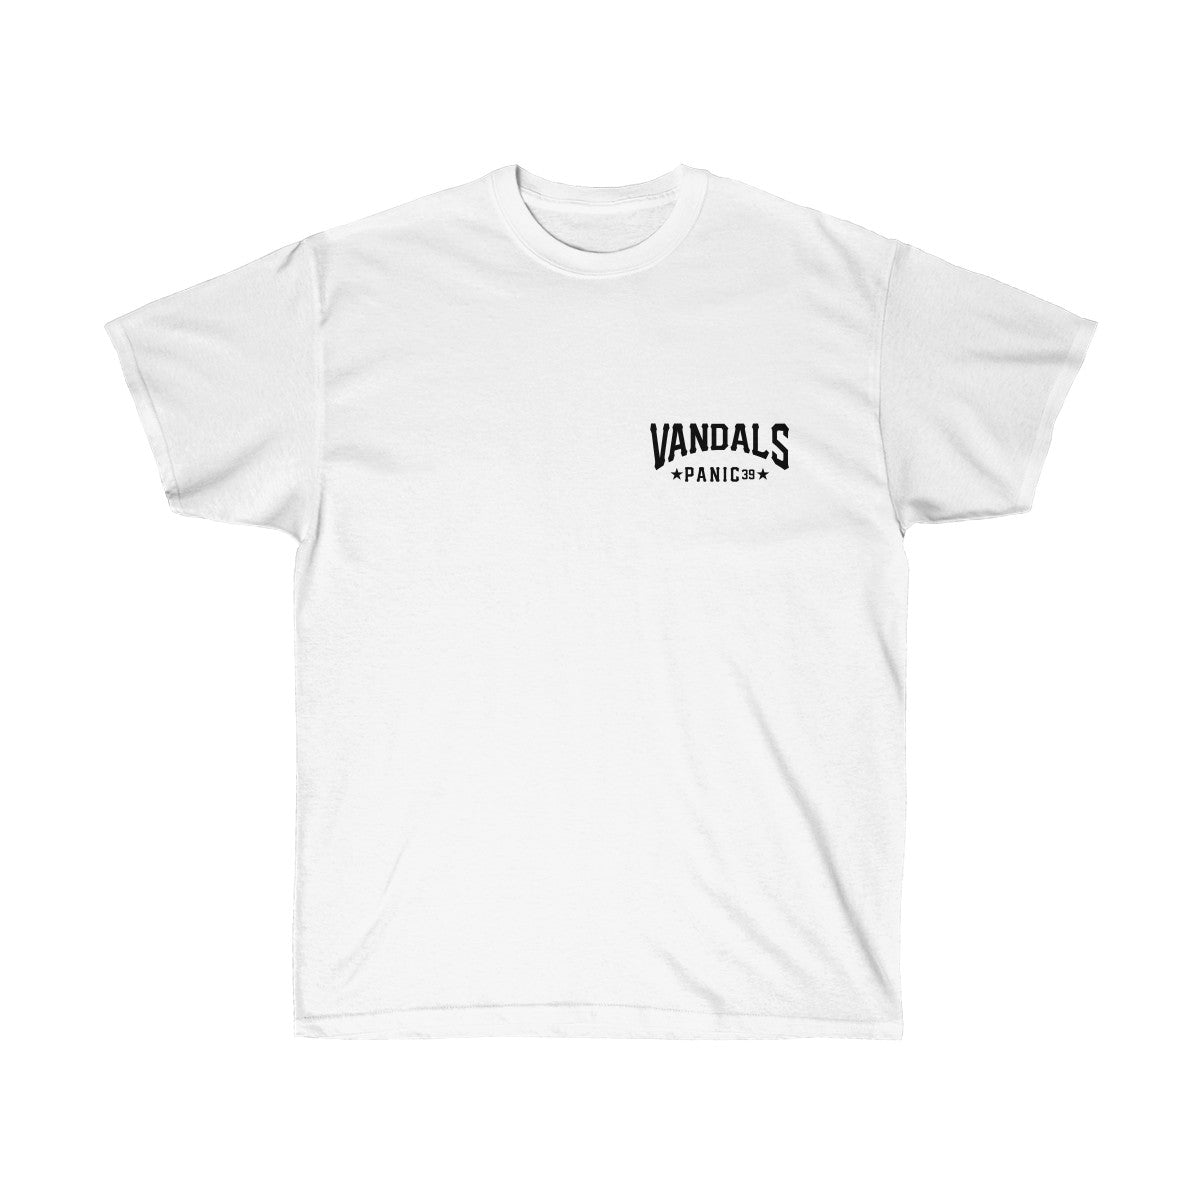 Panic 39 Mens Vandals T-Shirt - Black Print - bboy merch